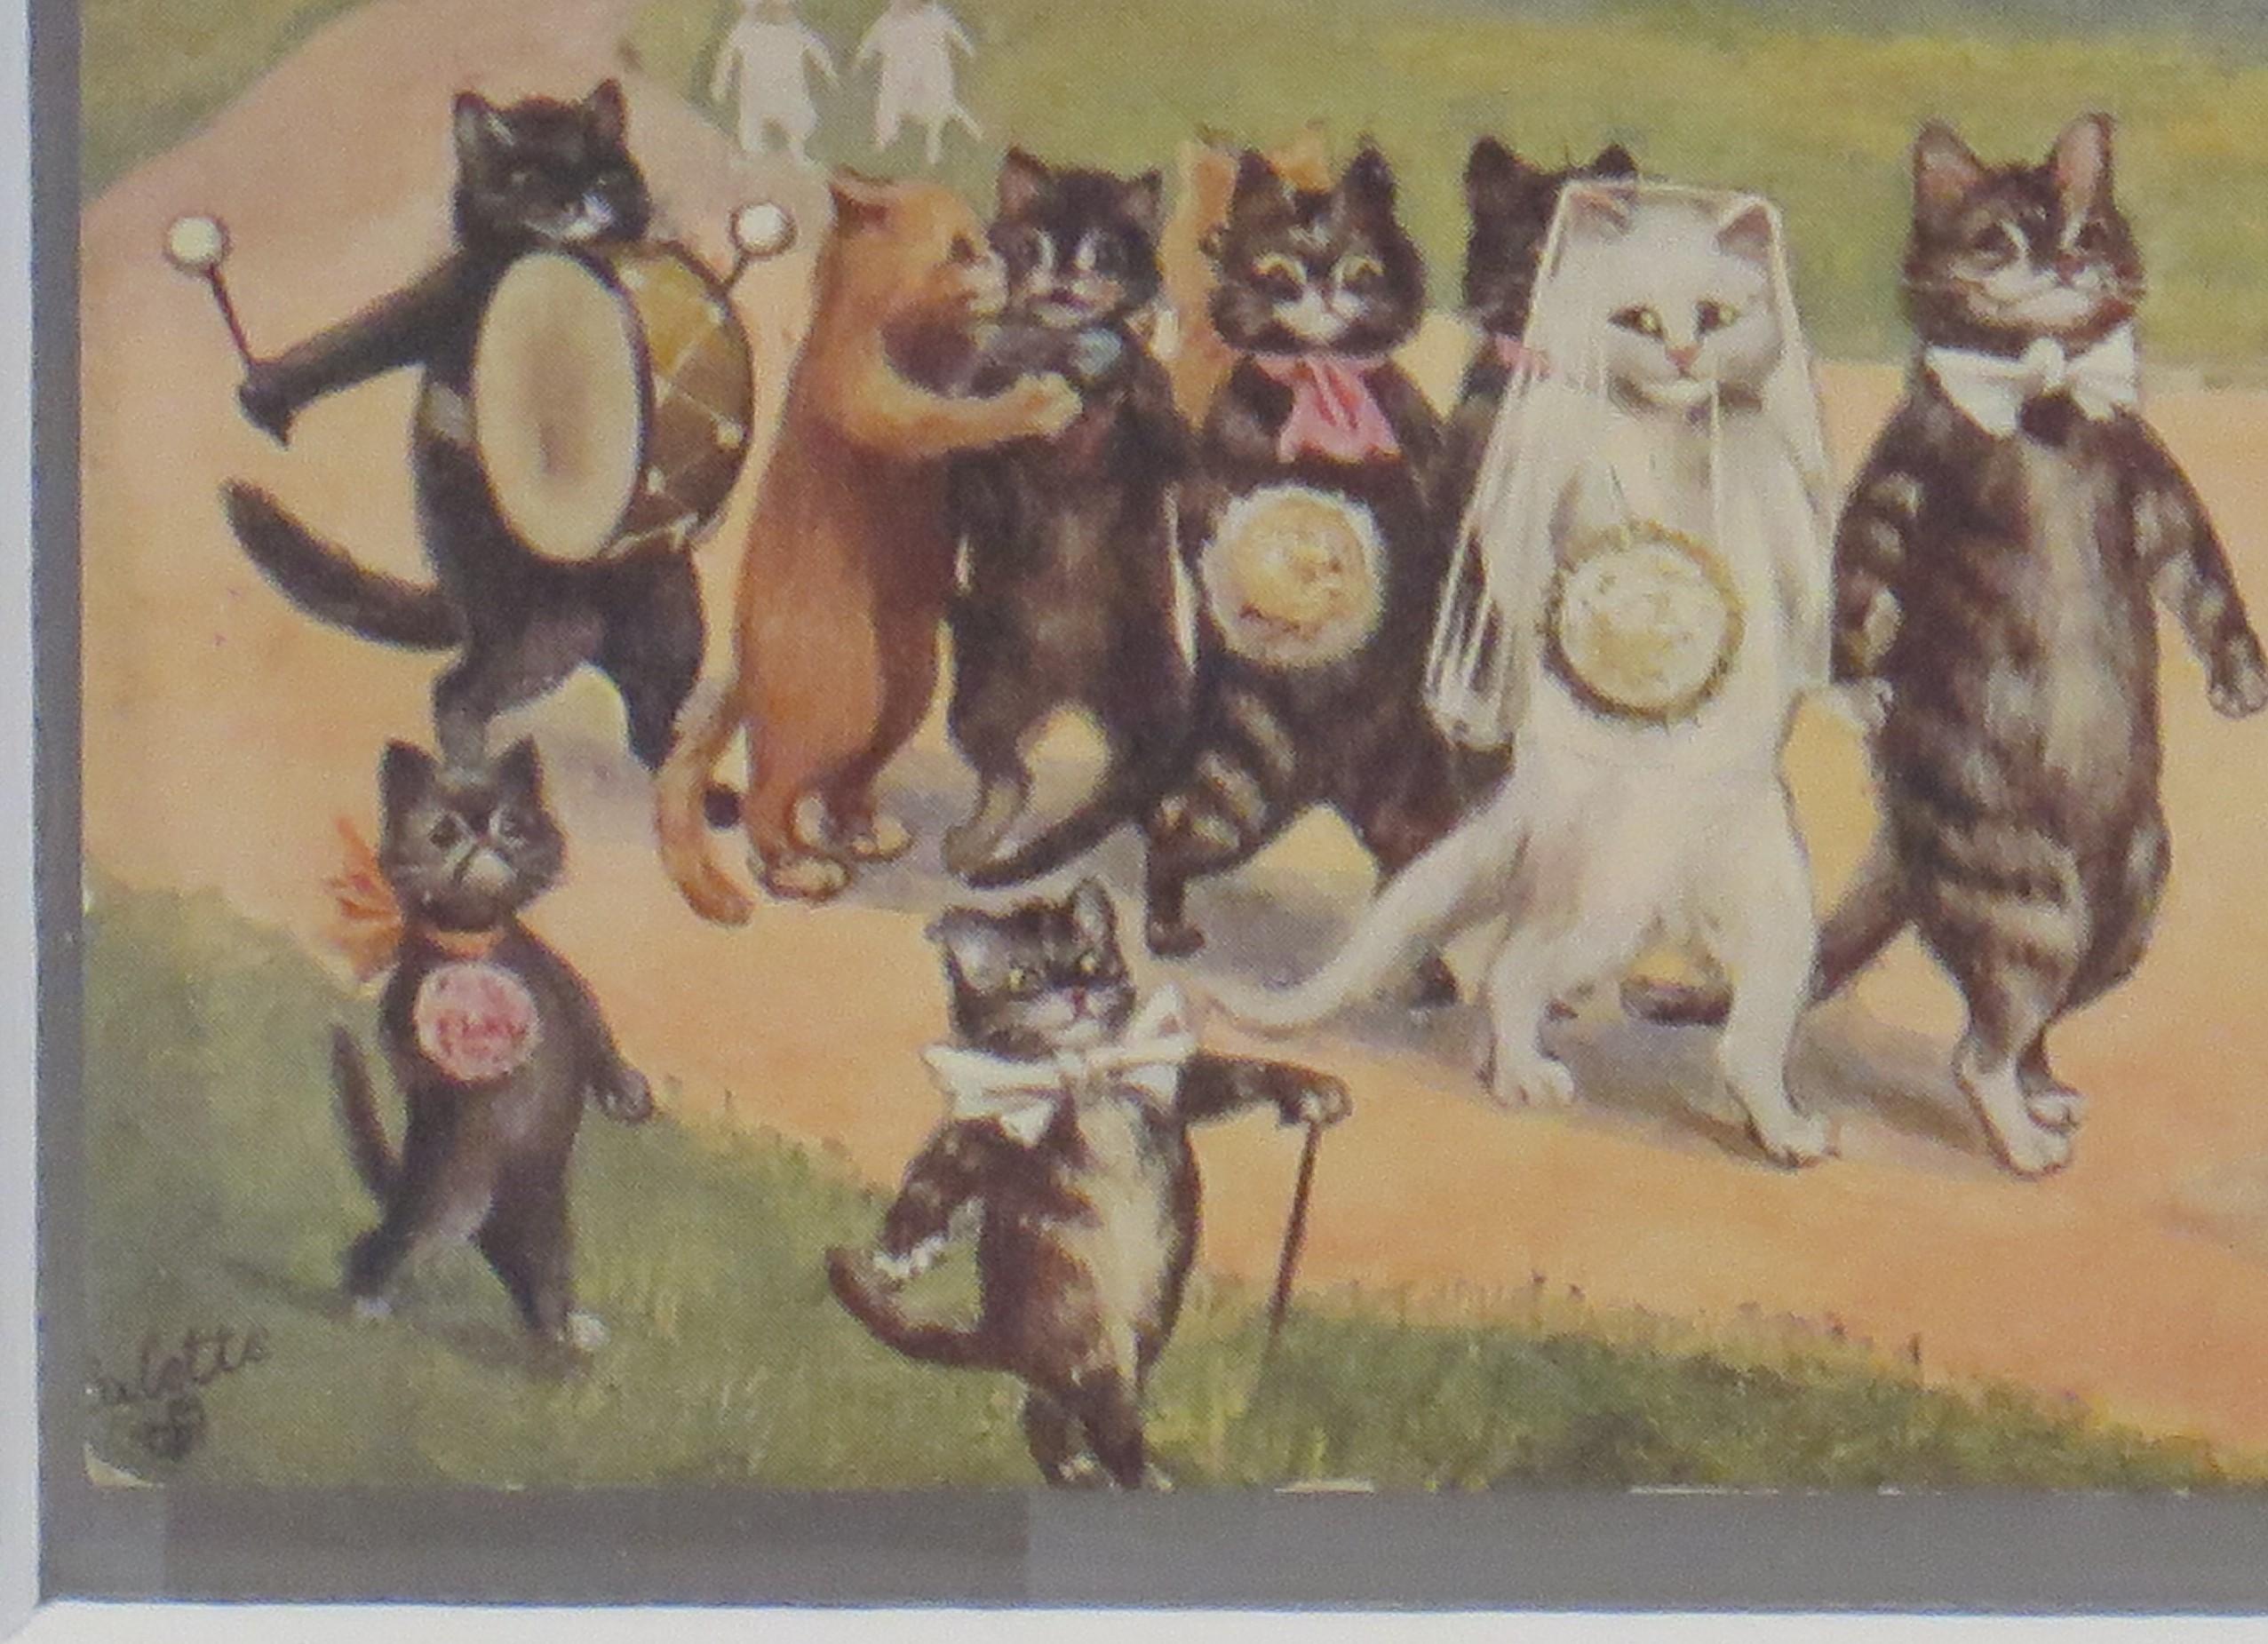 British Louis Wain Cat Postcard 